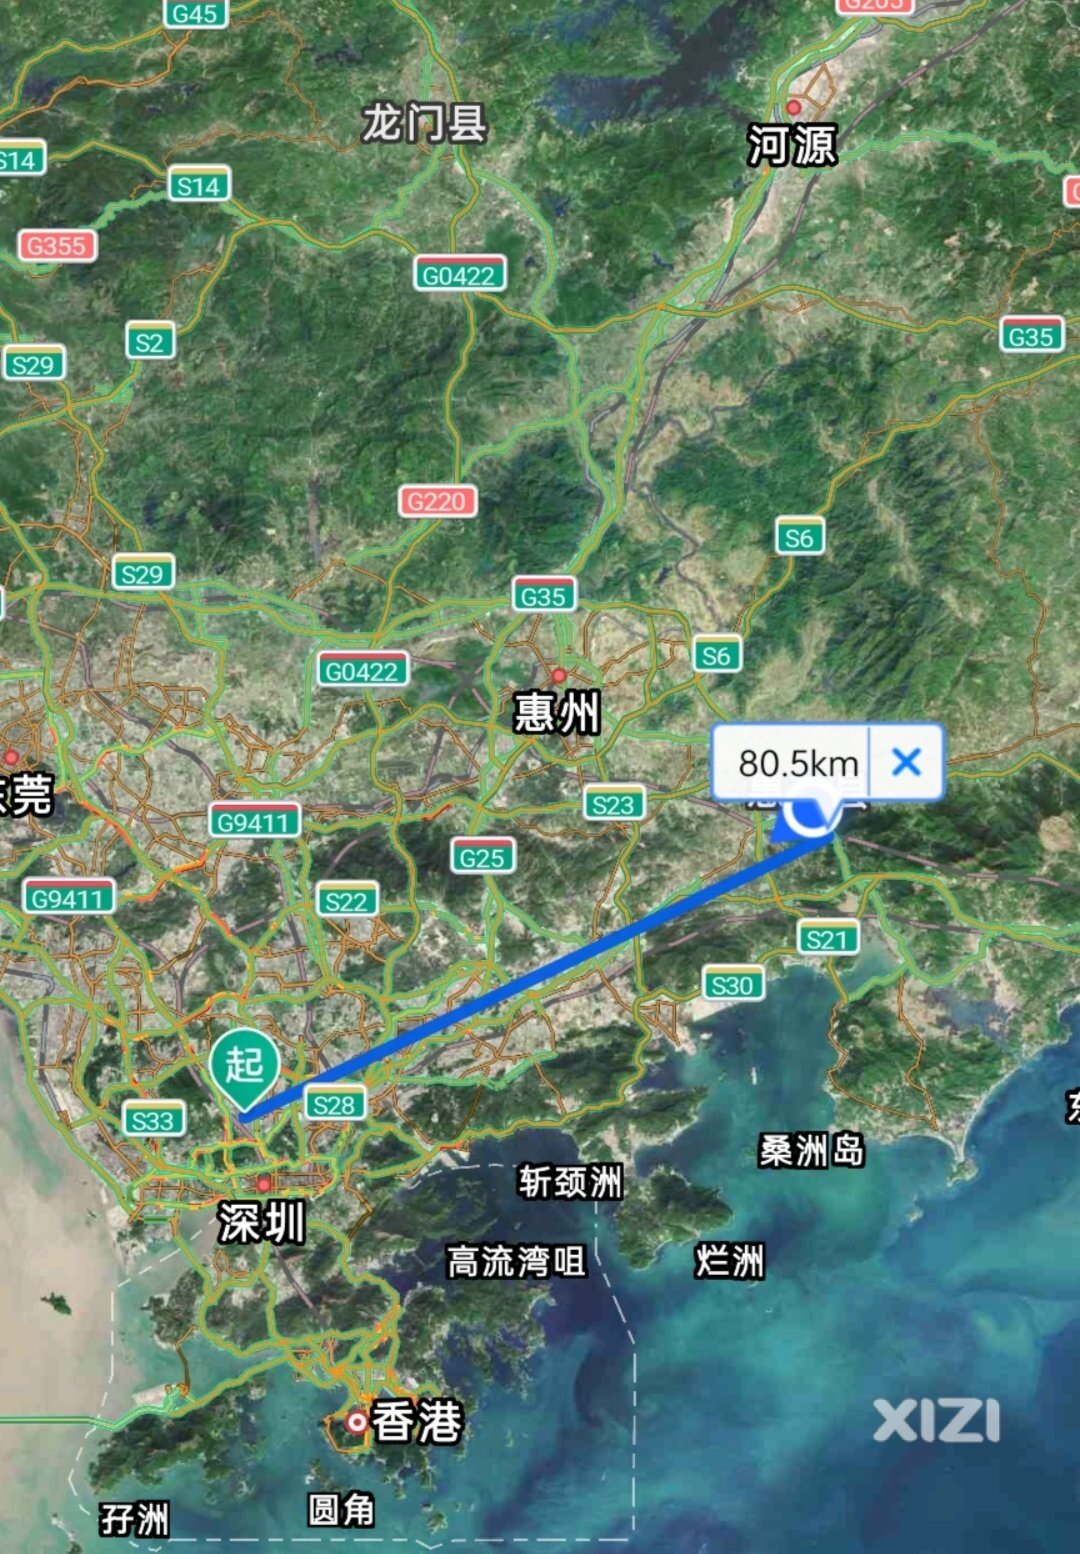 陈塘站到广州新塘南站预计60元。那陈塘站到深圳北预计40元这样。